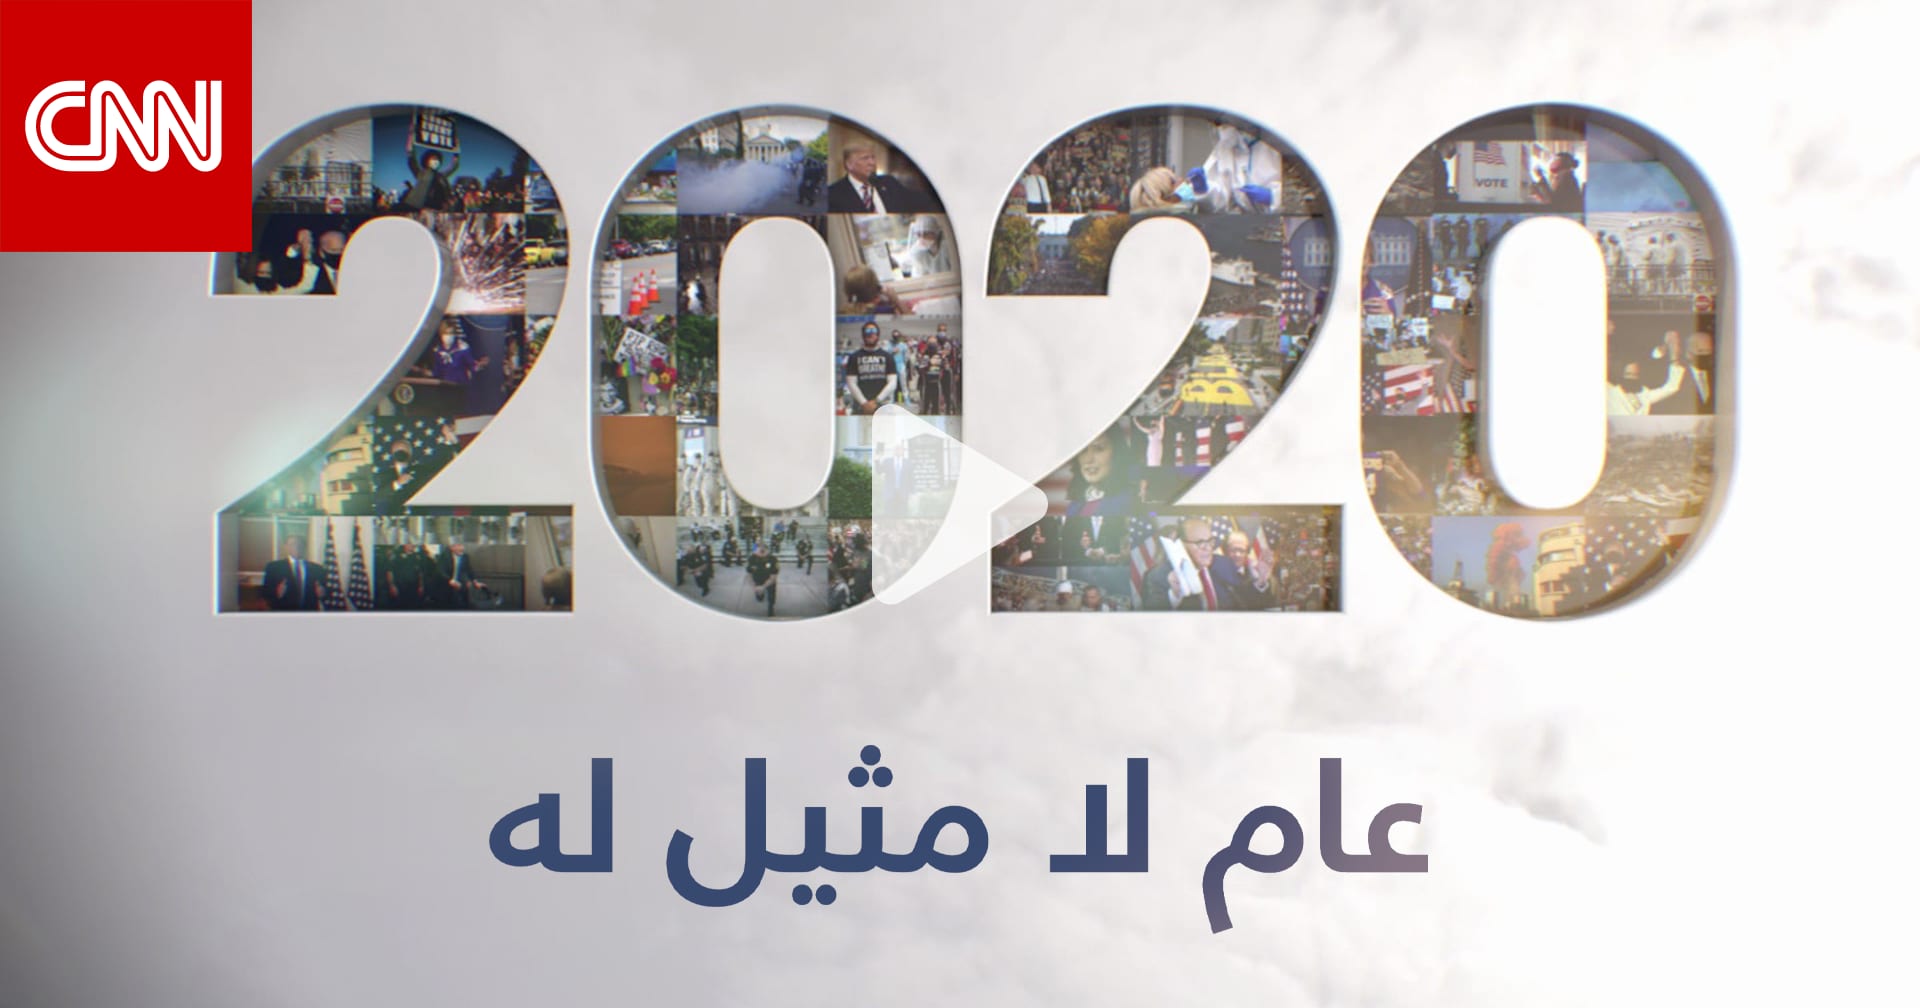 عام لن ينساه أحد أبرز الأحداث التي شهدها العالم في 2020 Cnn Arabic